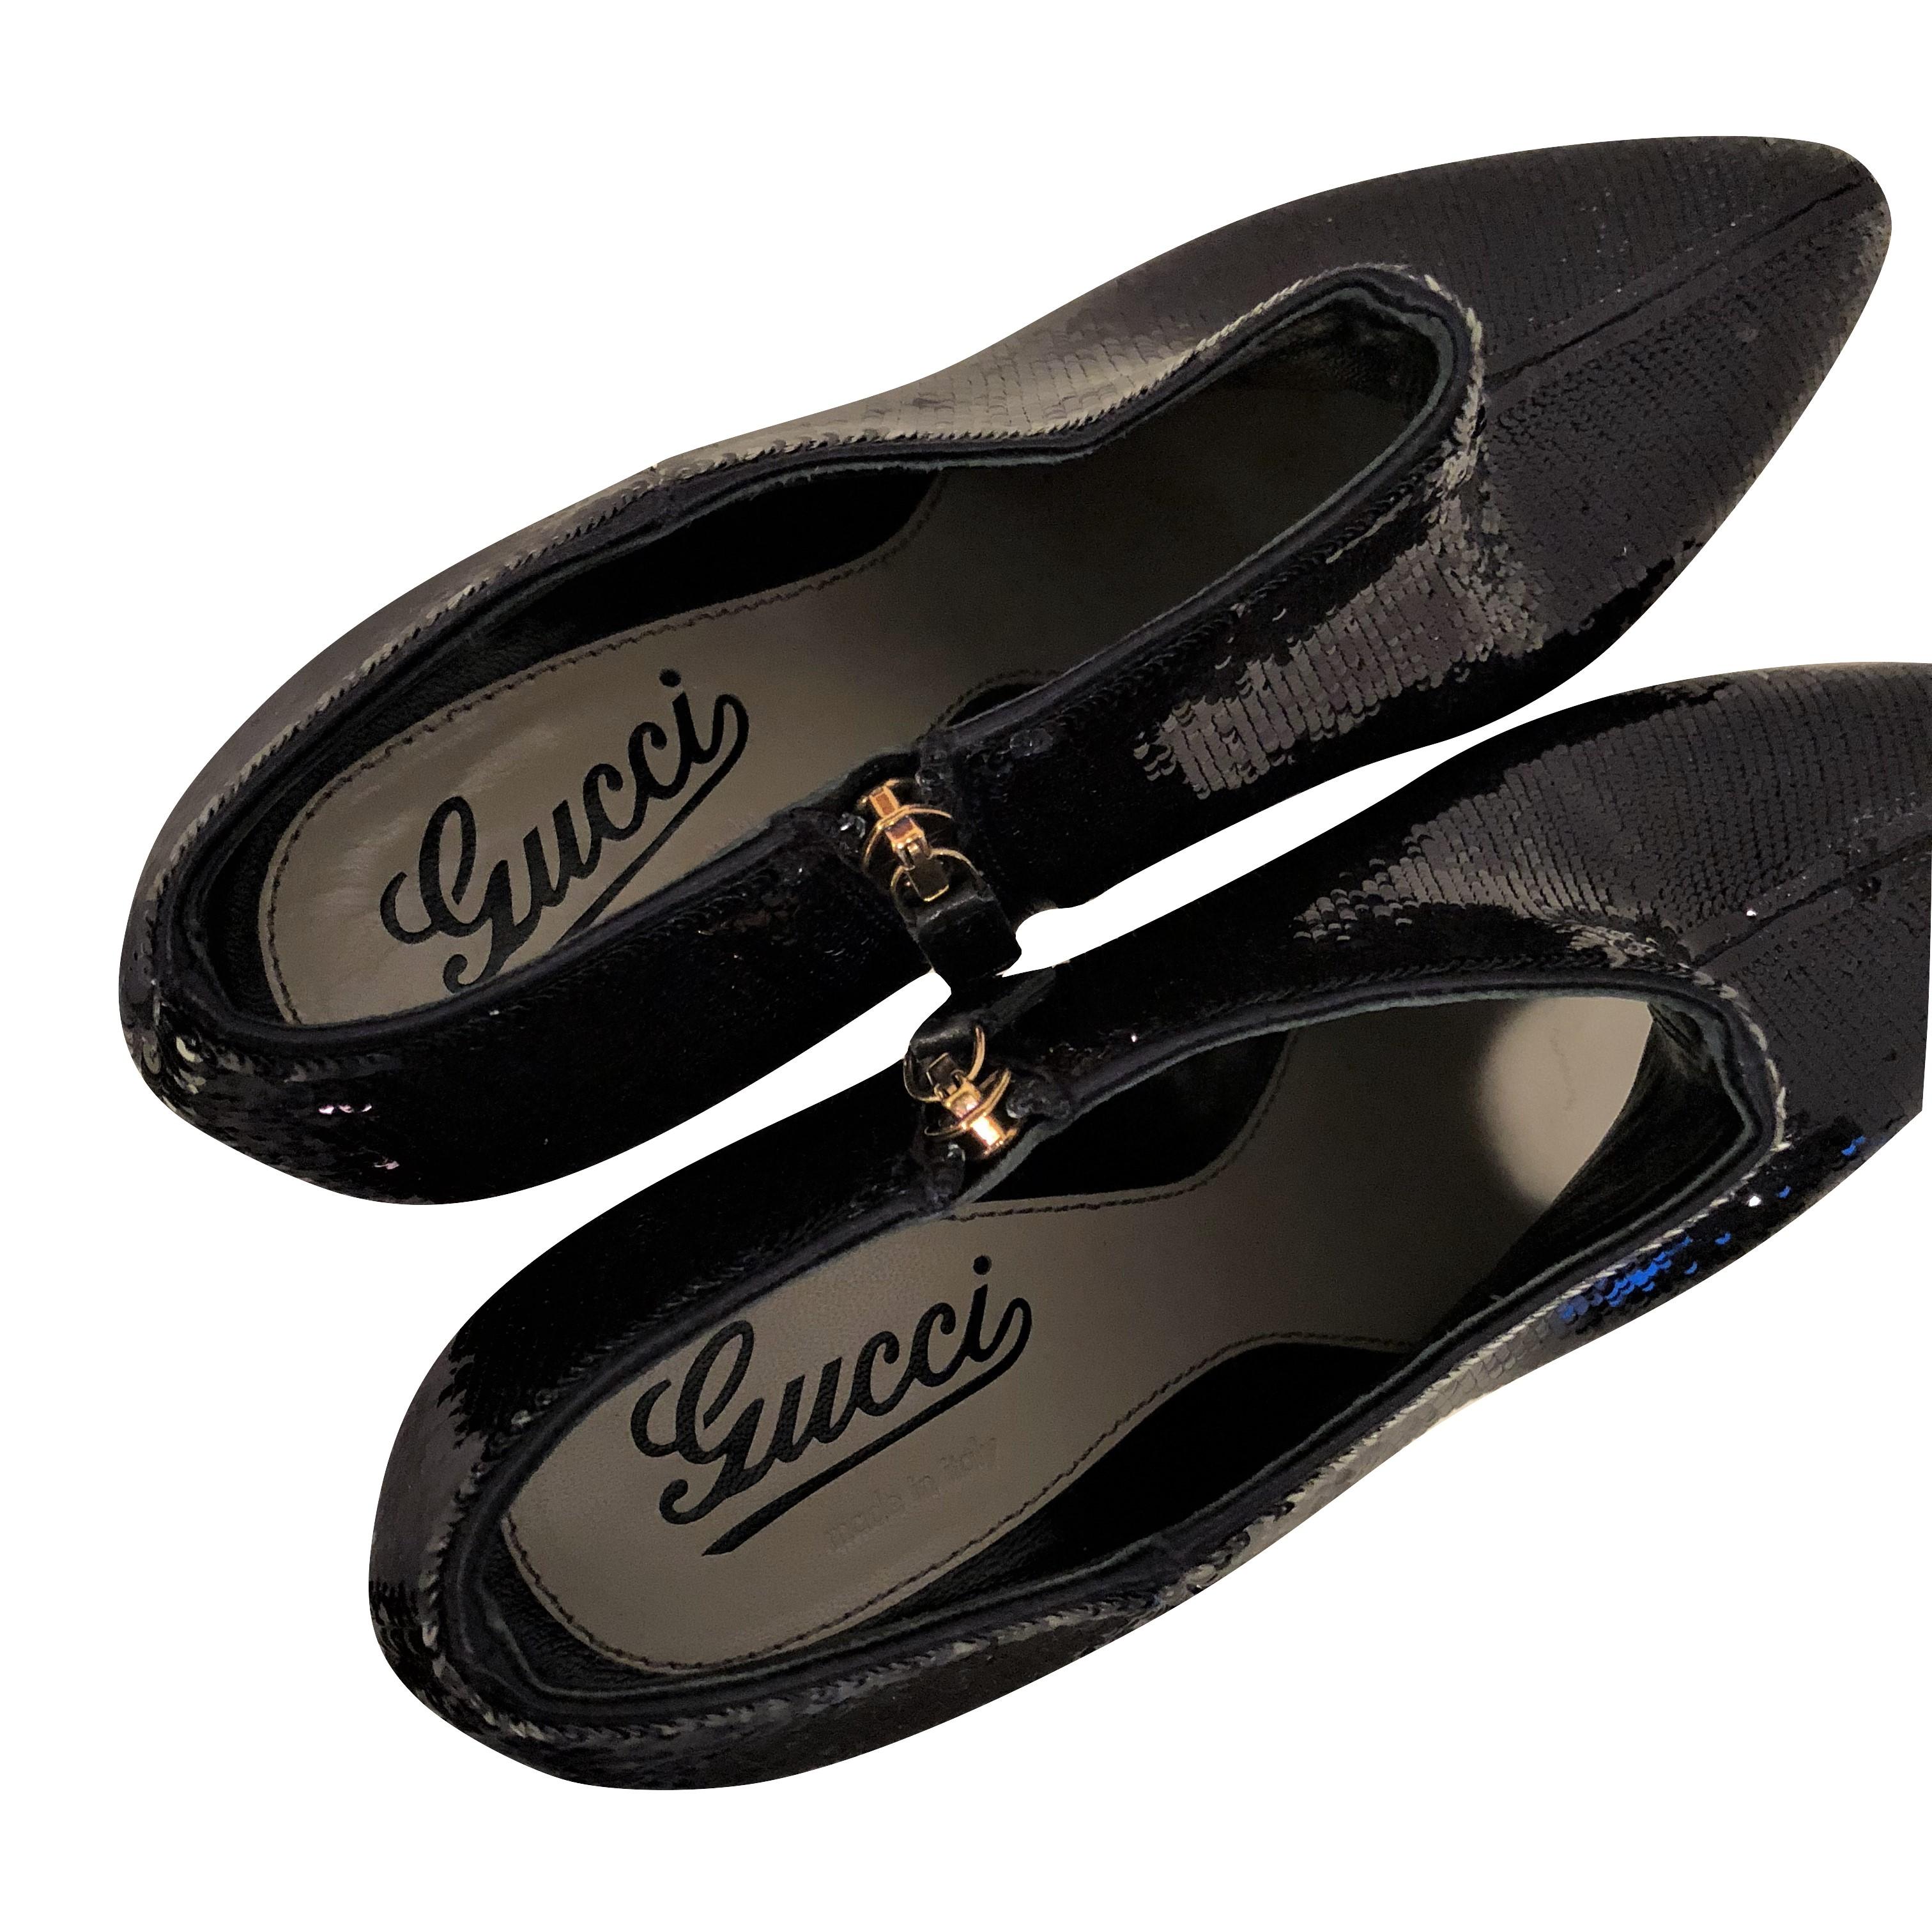 Black New Gucci Sequin Evening Boots Booties Heels Sz 38